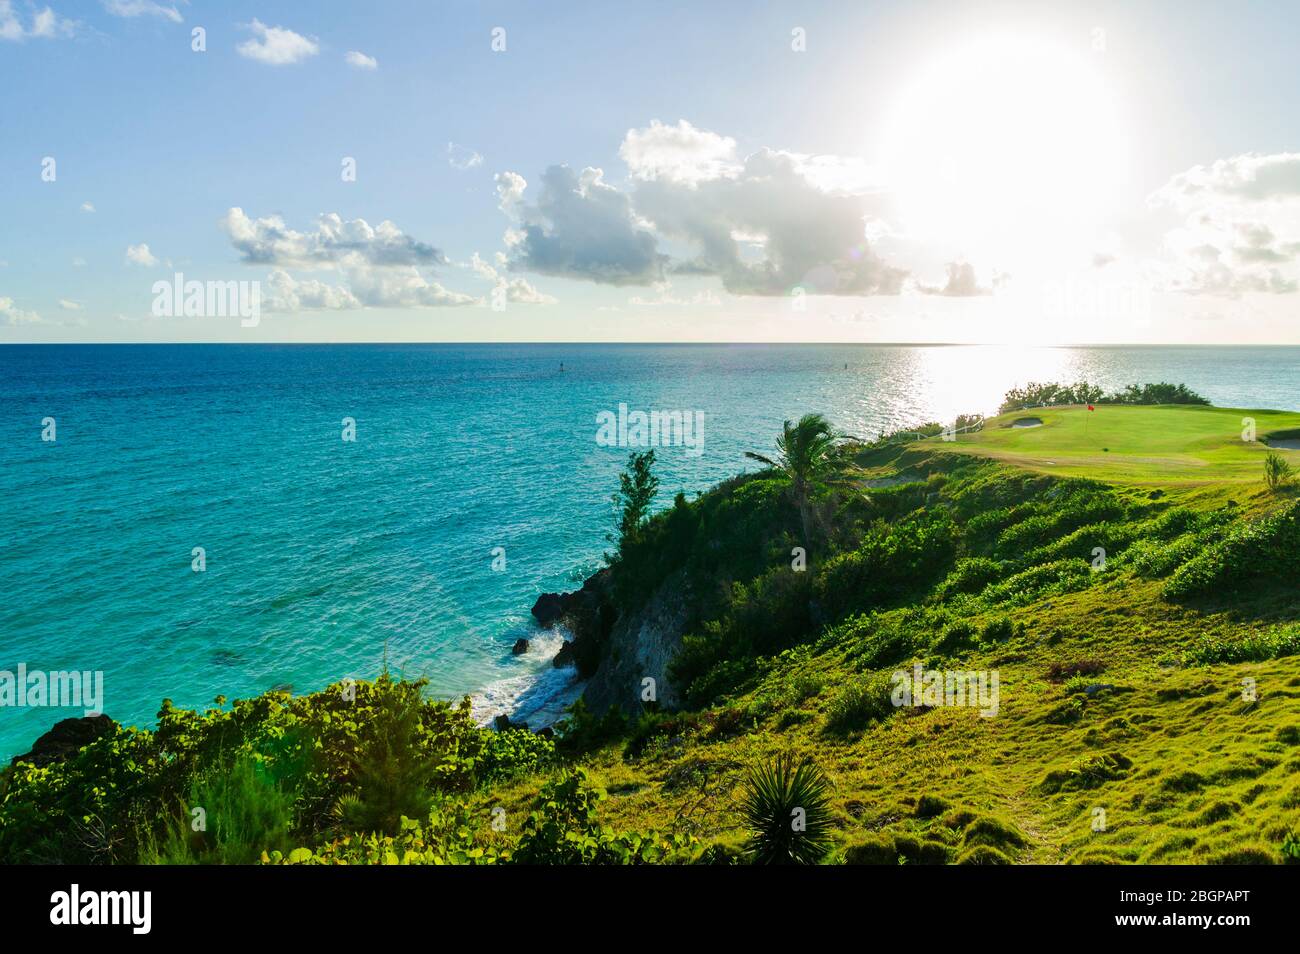 Männliche Touristen im Urlaub schlagen einen Golfball aus einer Sandfalle in der Nähe eines grünen, Port Royal Golfplatz Stockfoto